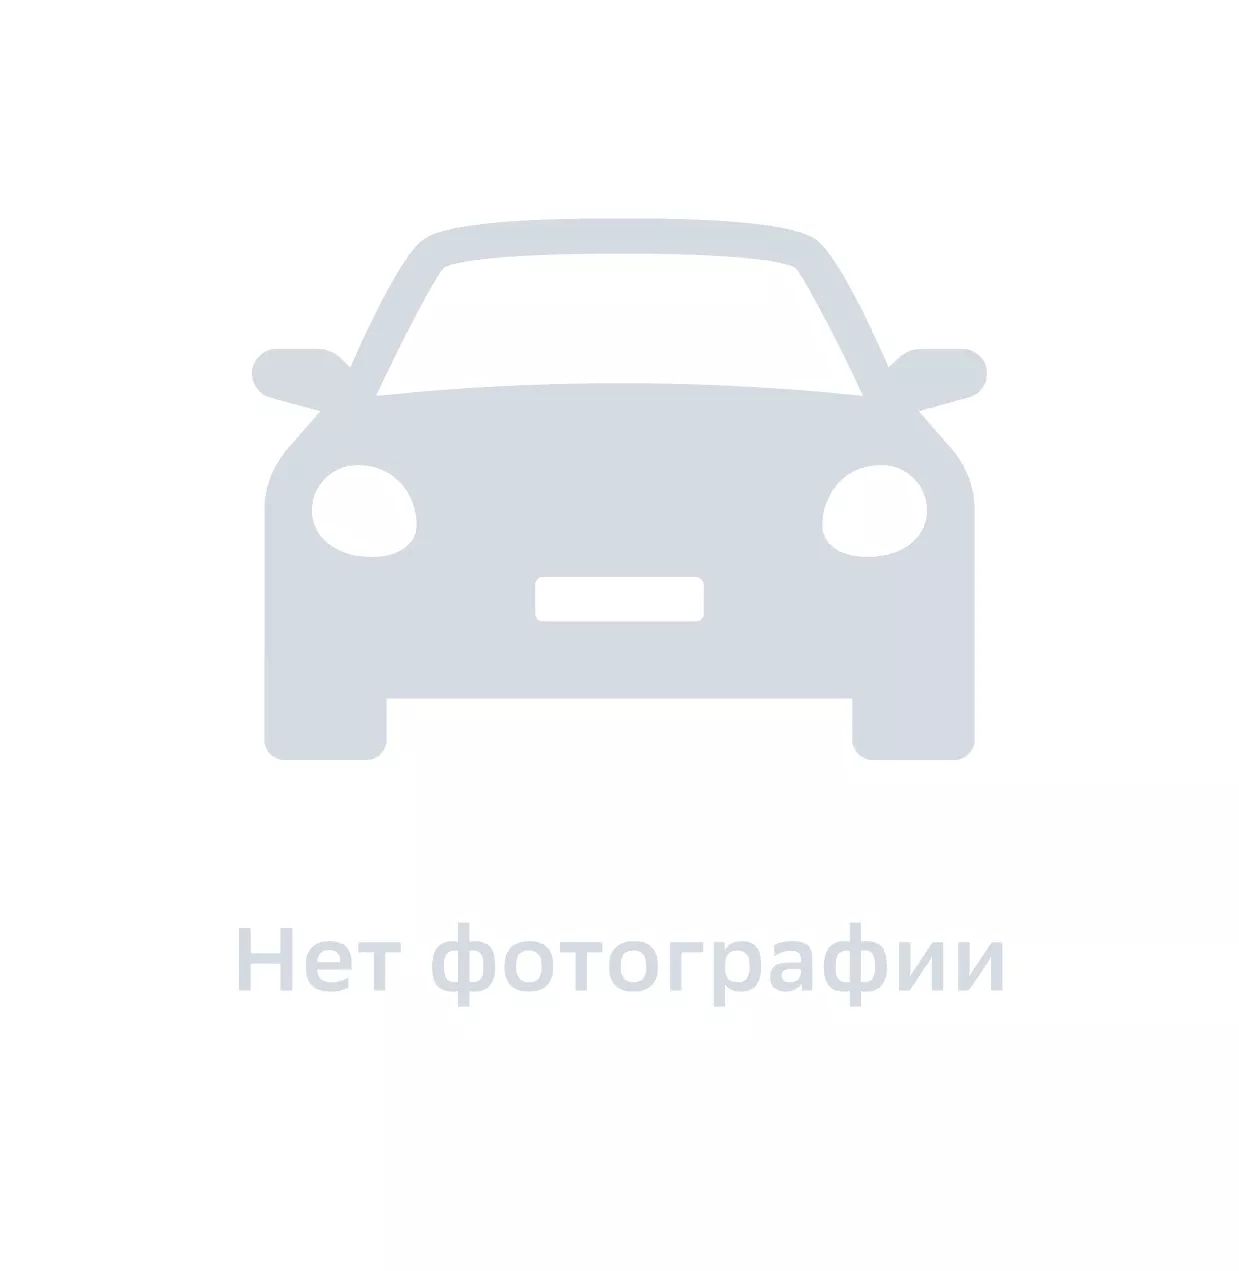 Кулак передний правый, Hyundai-KIA, арт. 517163K050, цена за 1 шт.